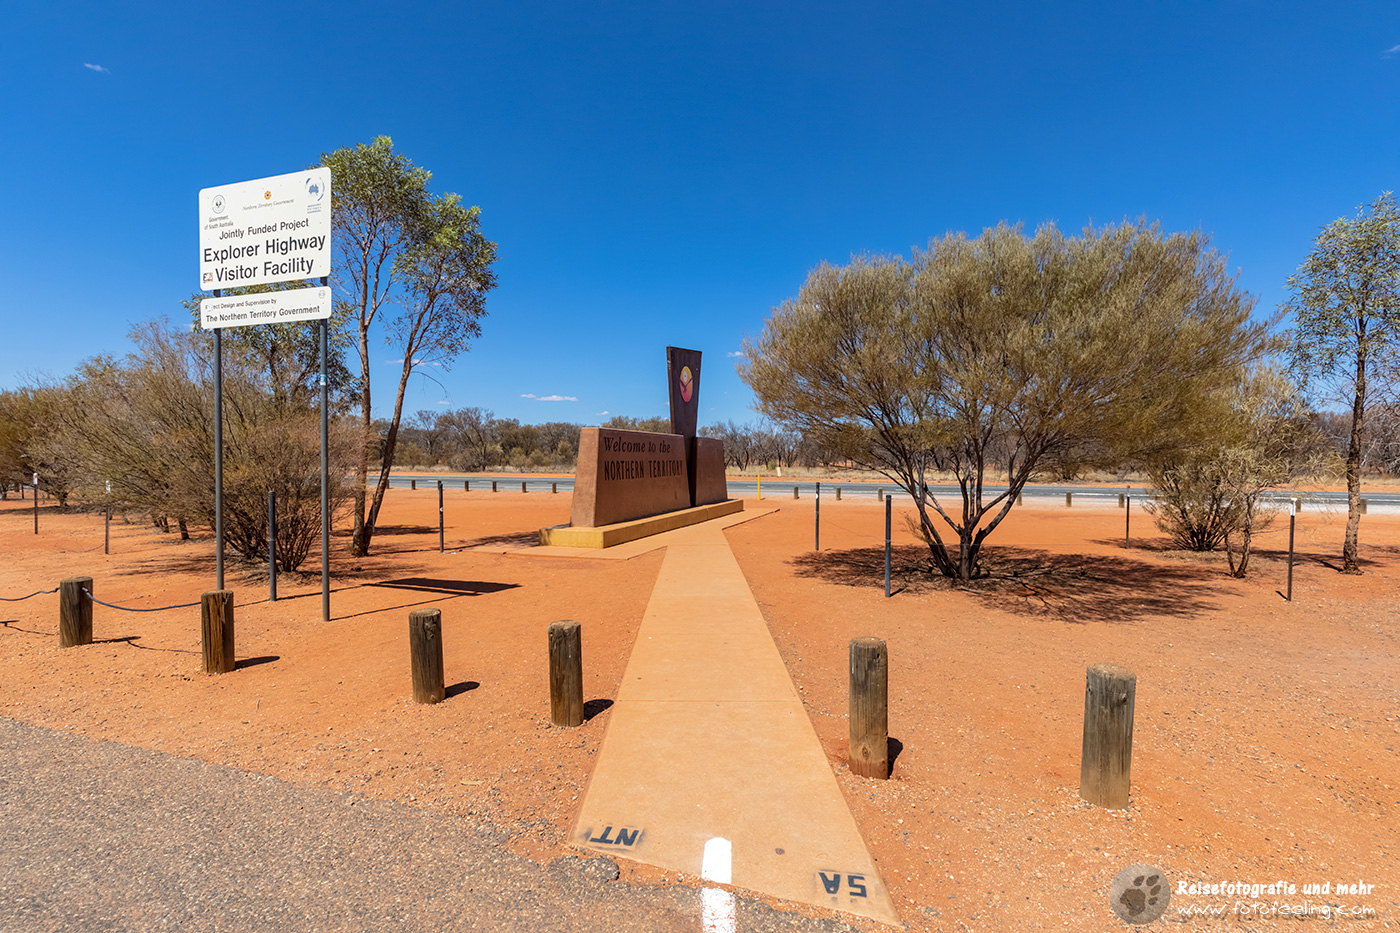 Grenze zwischen South Australia nach Northern Territory, Australien